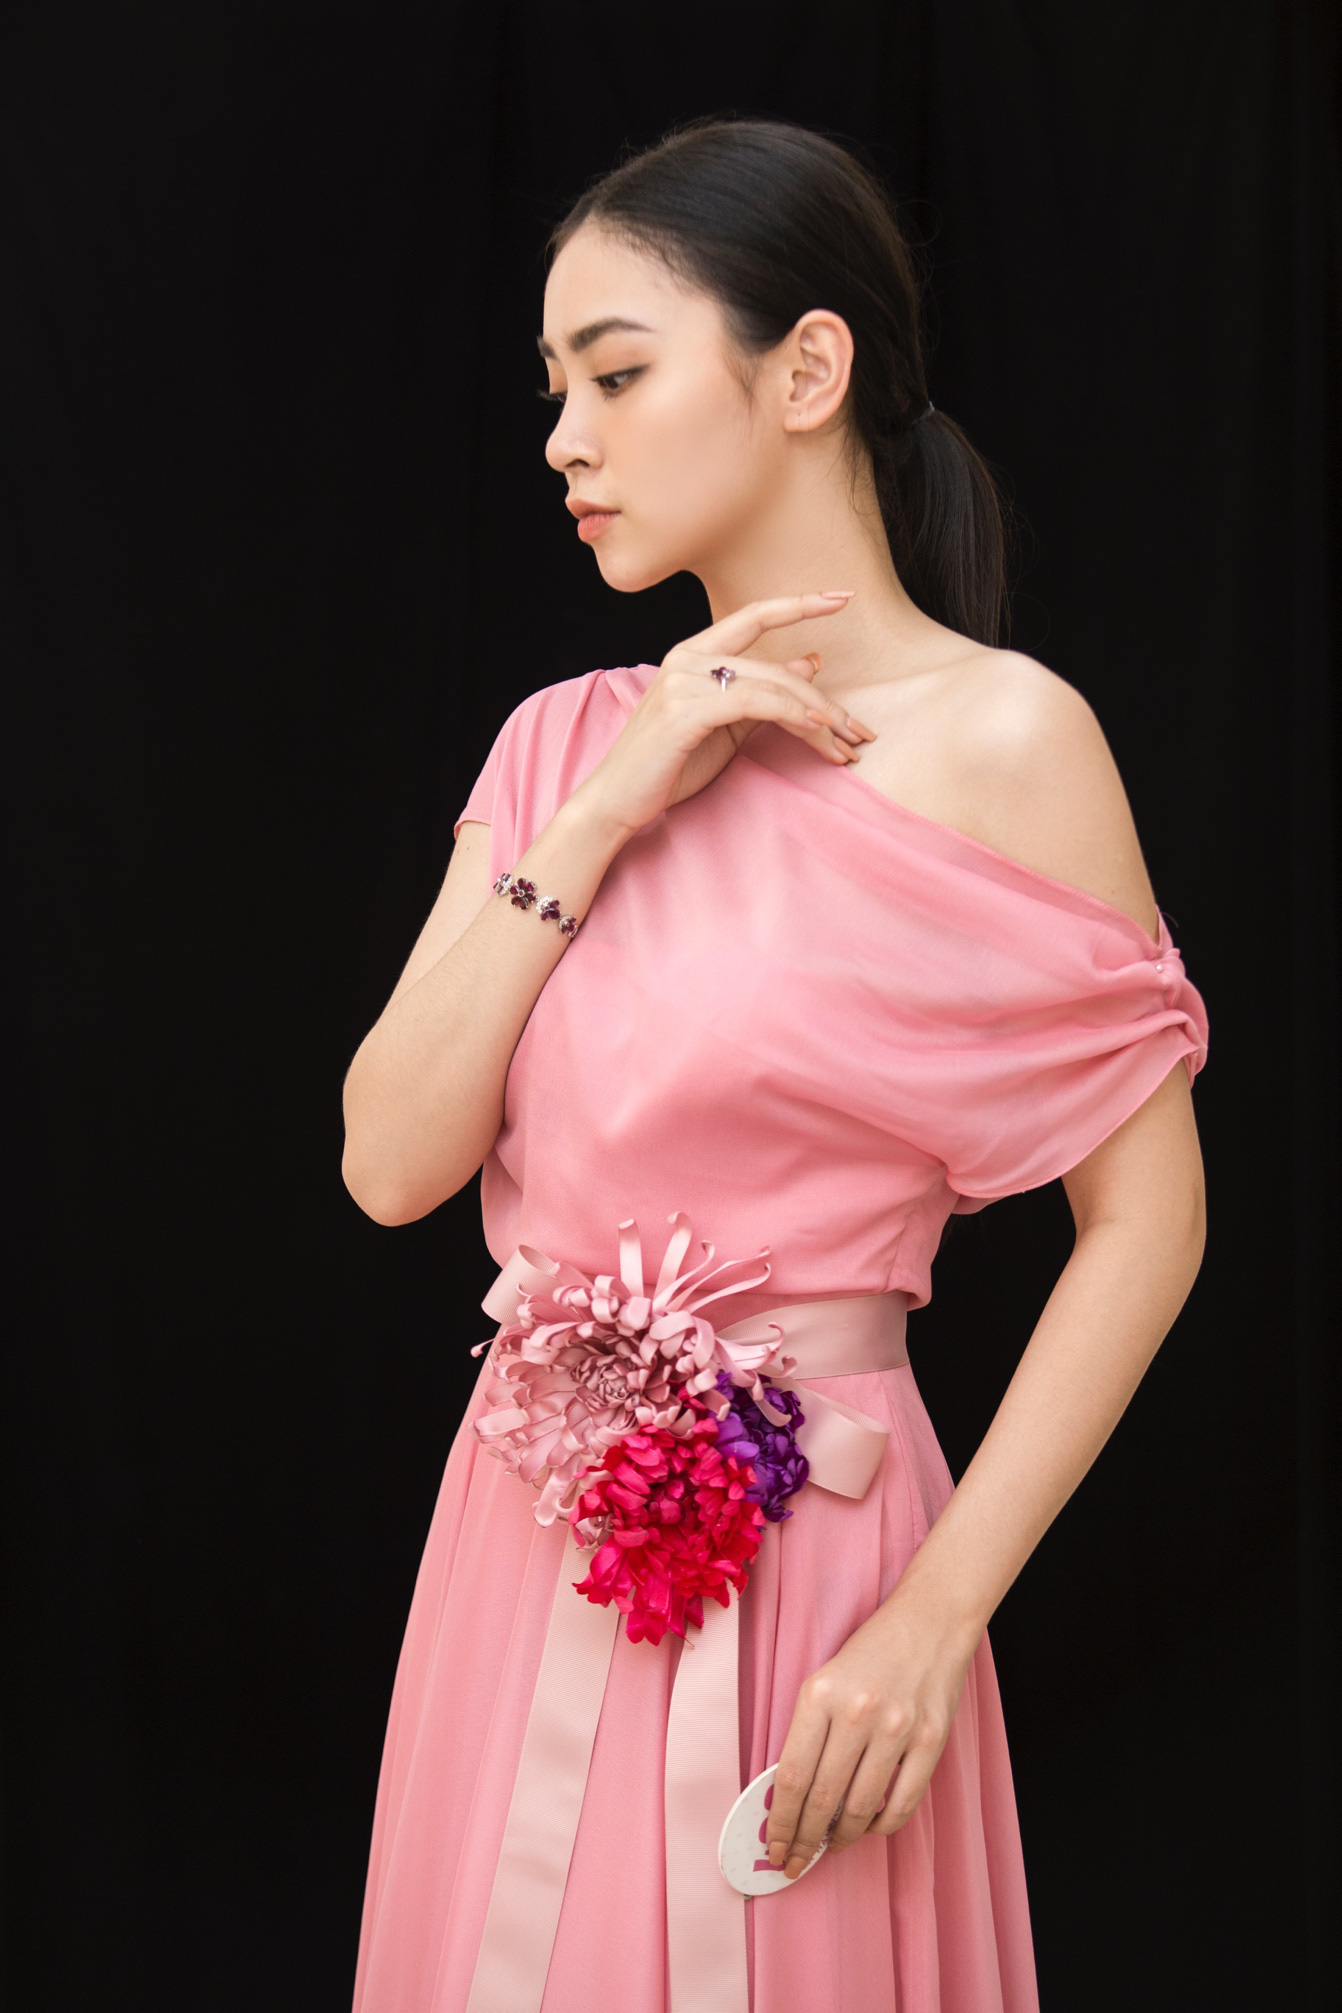 NEVA FASHION SHOW đã thổi “làn gió mới” cho ngành thời trang cao cấp Việt - Ảnh 5.